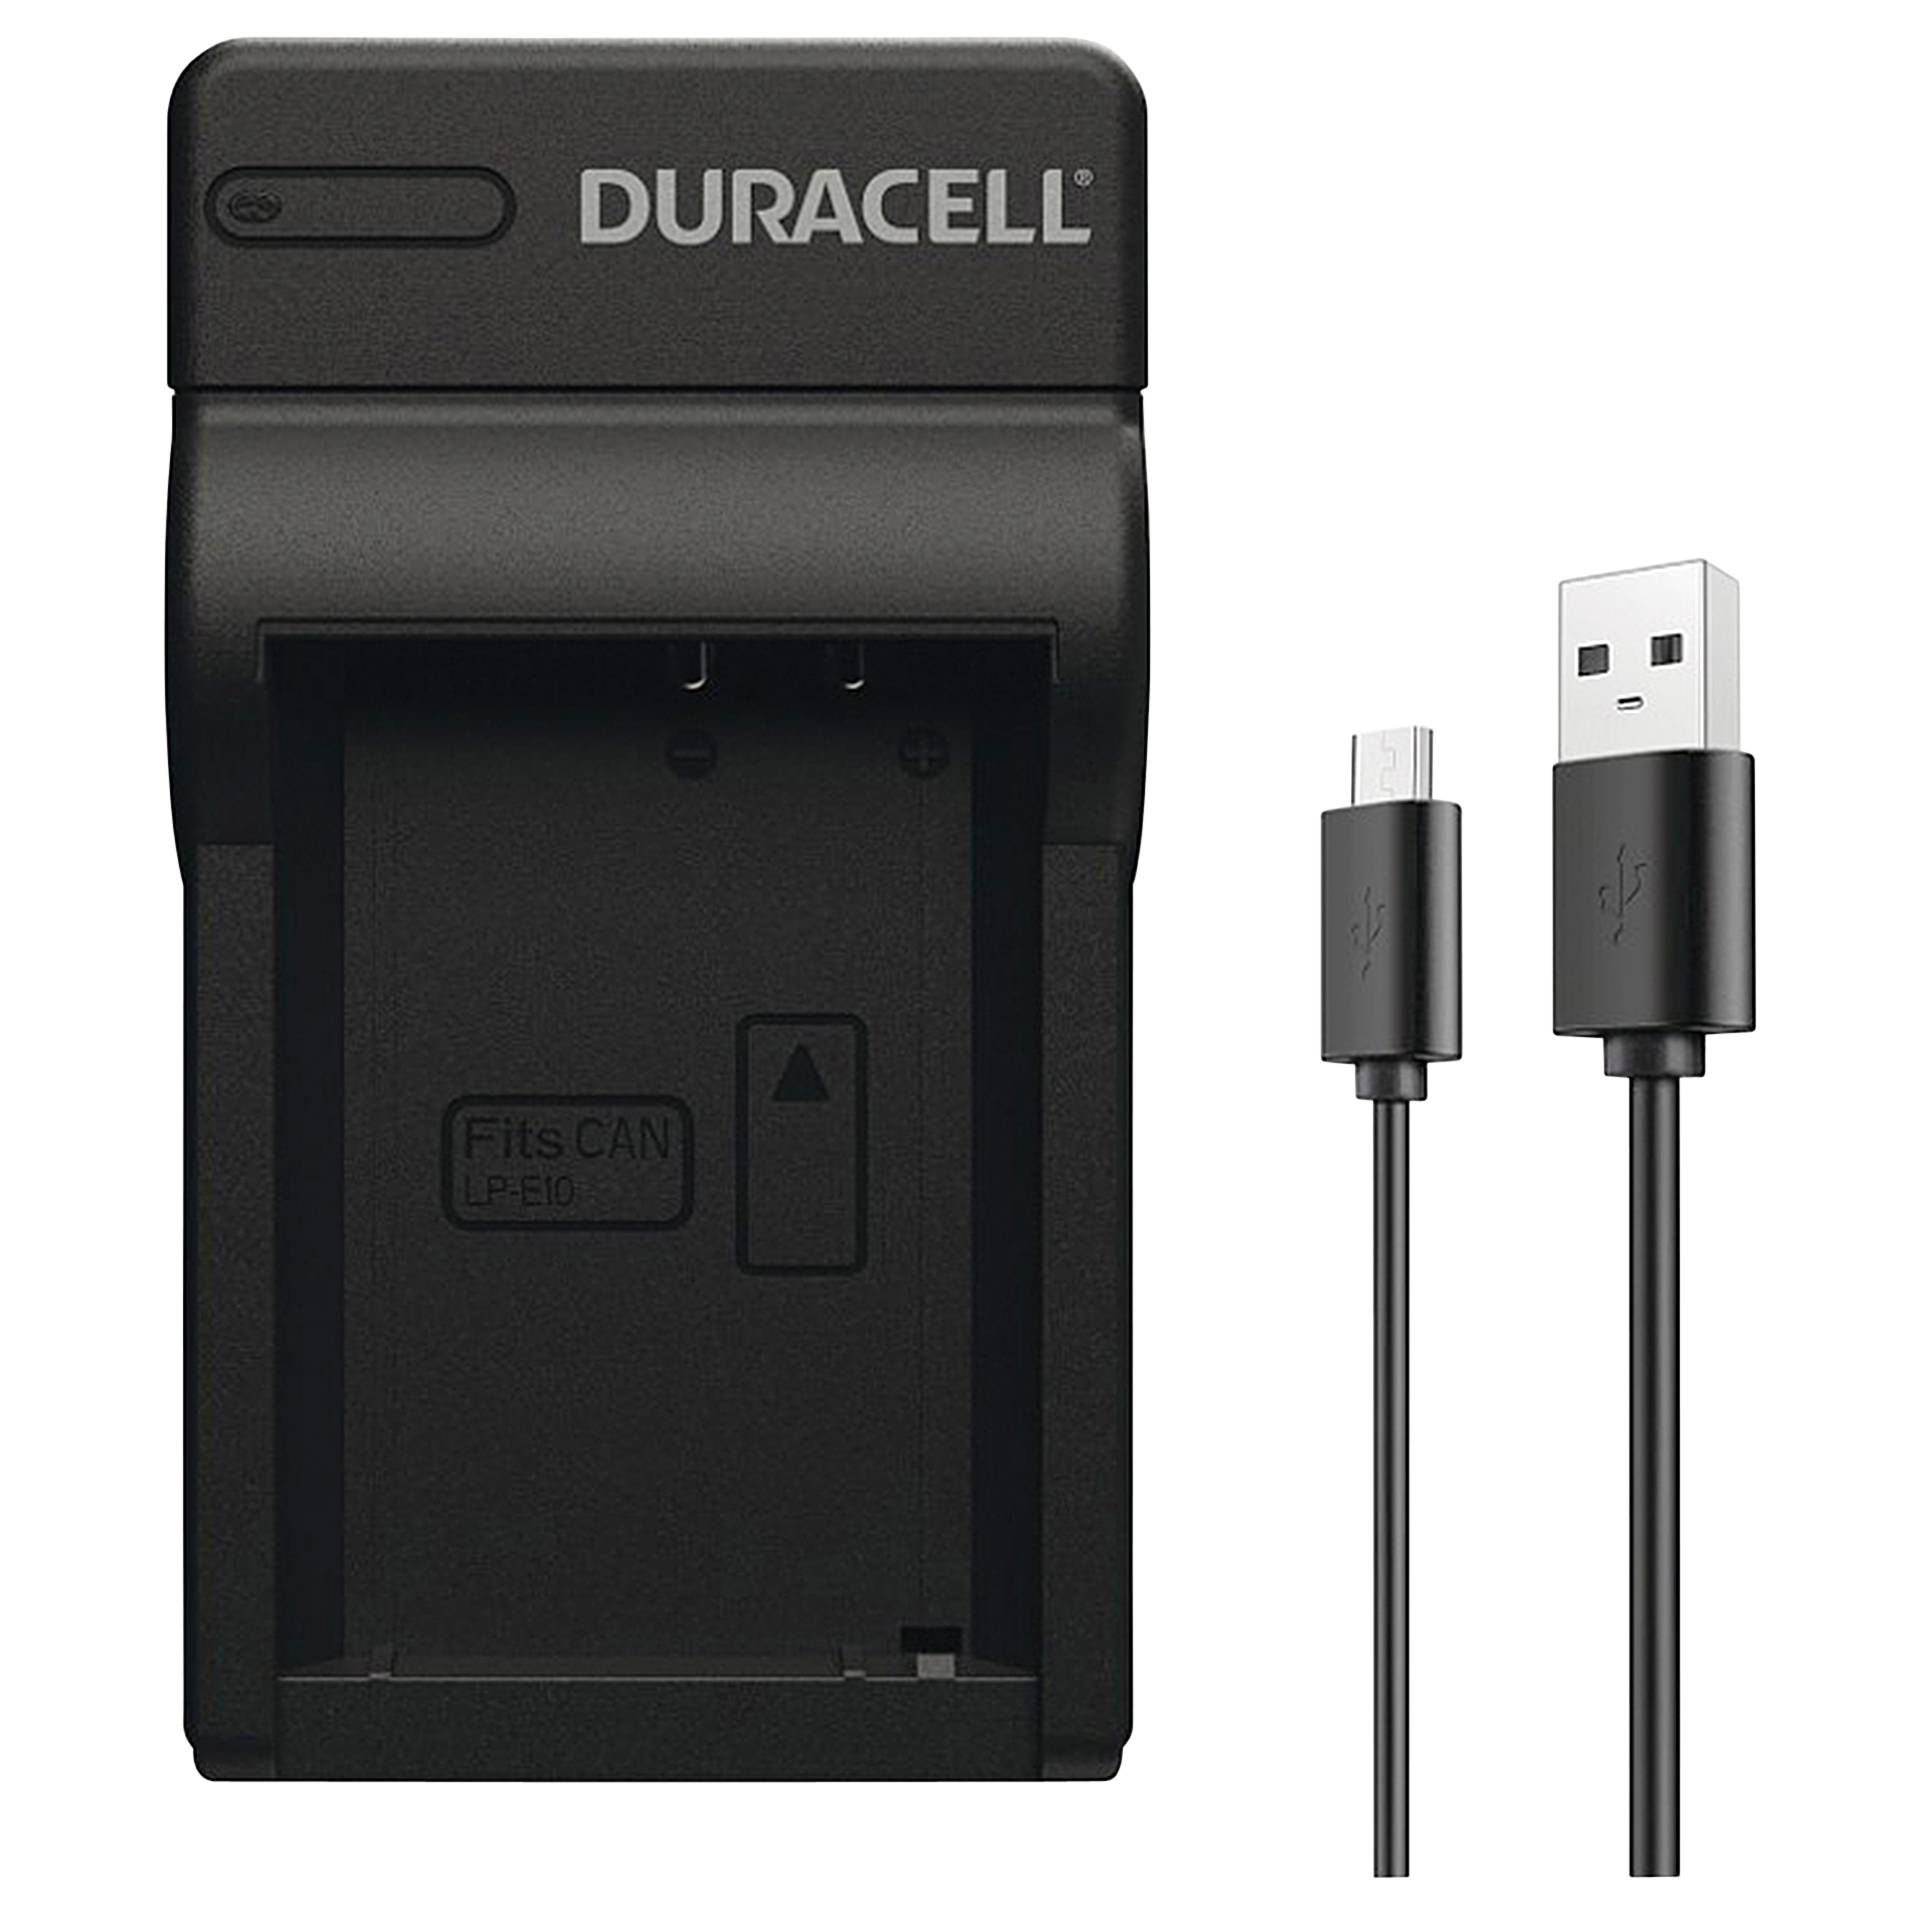 Duracell caricabatt.con cavo USB per DR9967/LP-E10